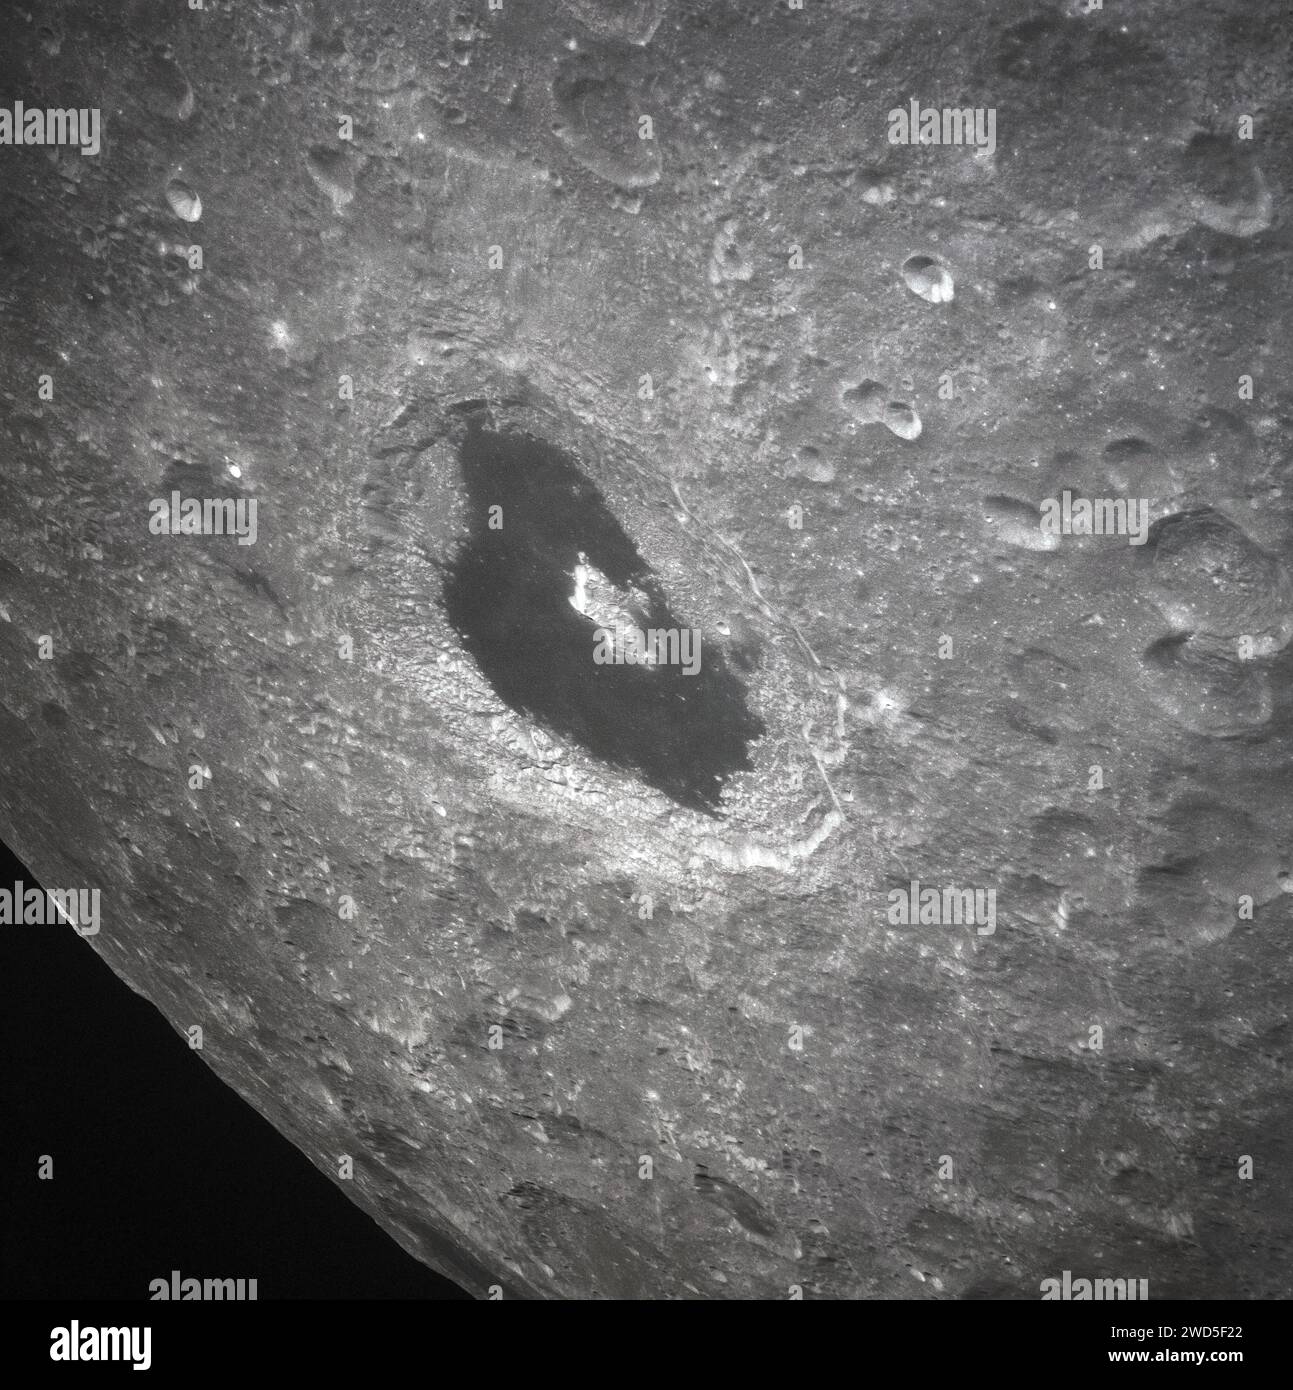 Veduta del lunare che mostra il cratere Tsiolkovsky, come fotografato dall'equipaggio della missione Apollo 13 durante il loro passo lunare, Johnson Space Center, NASA, 14 aprile 1970 Foto Stock